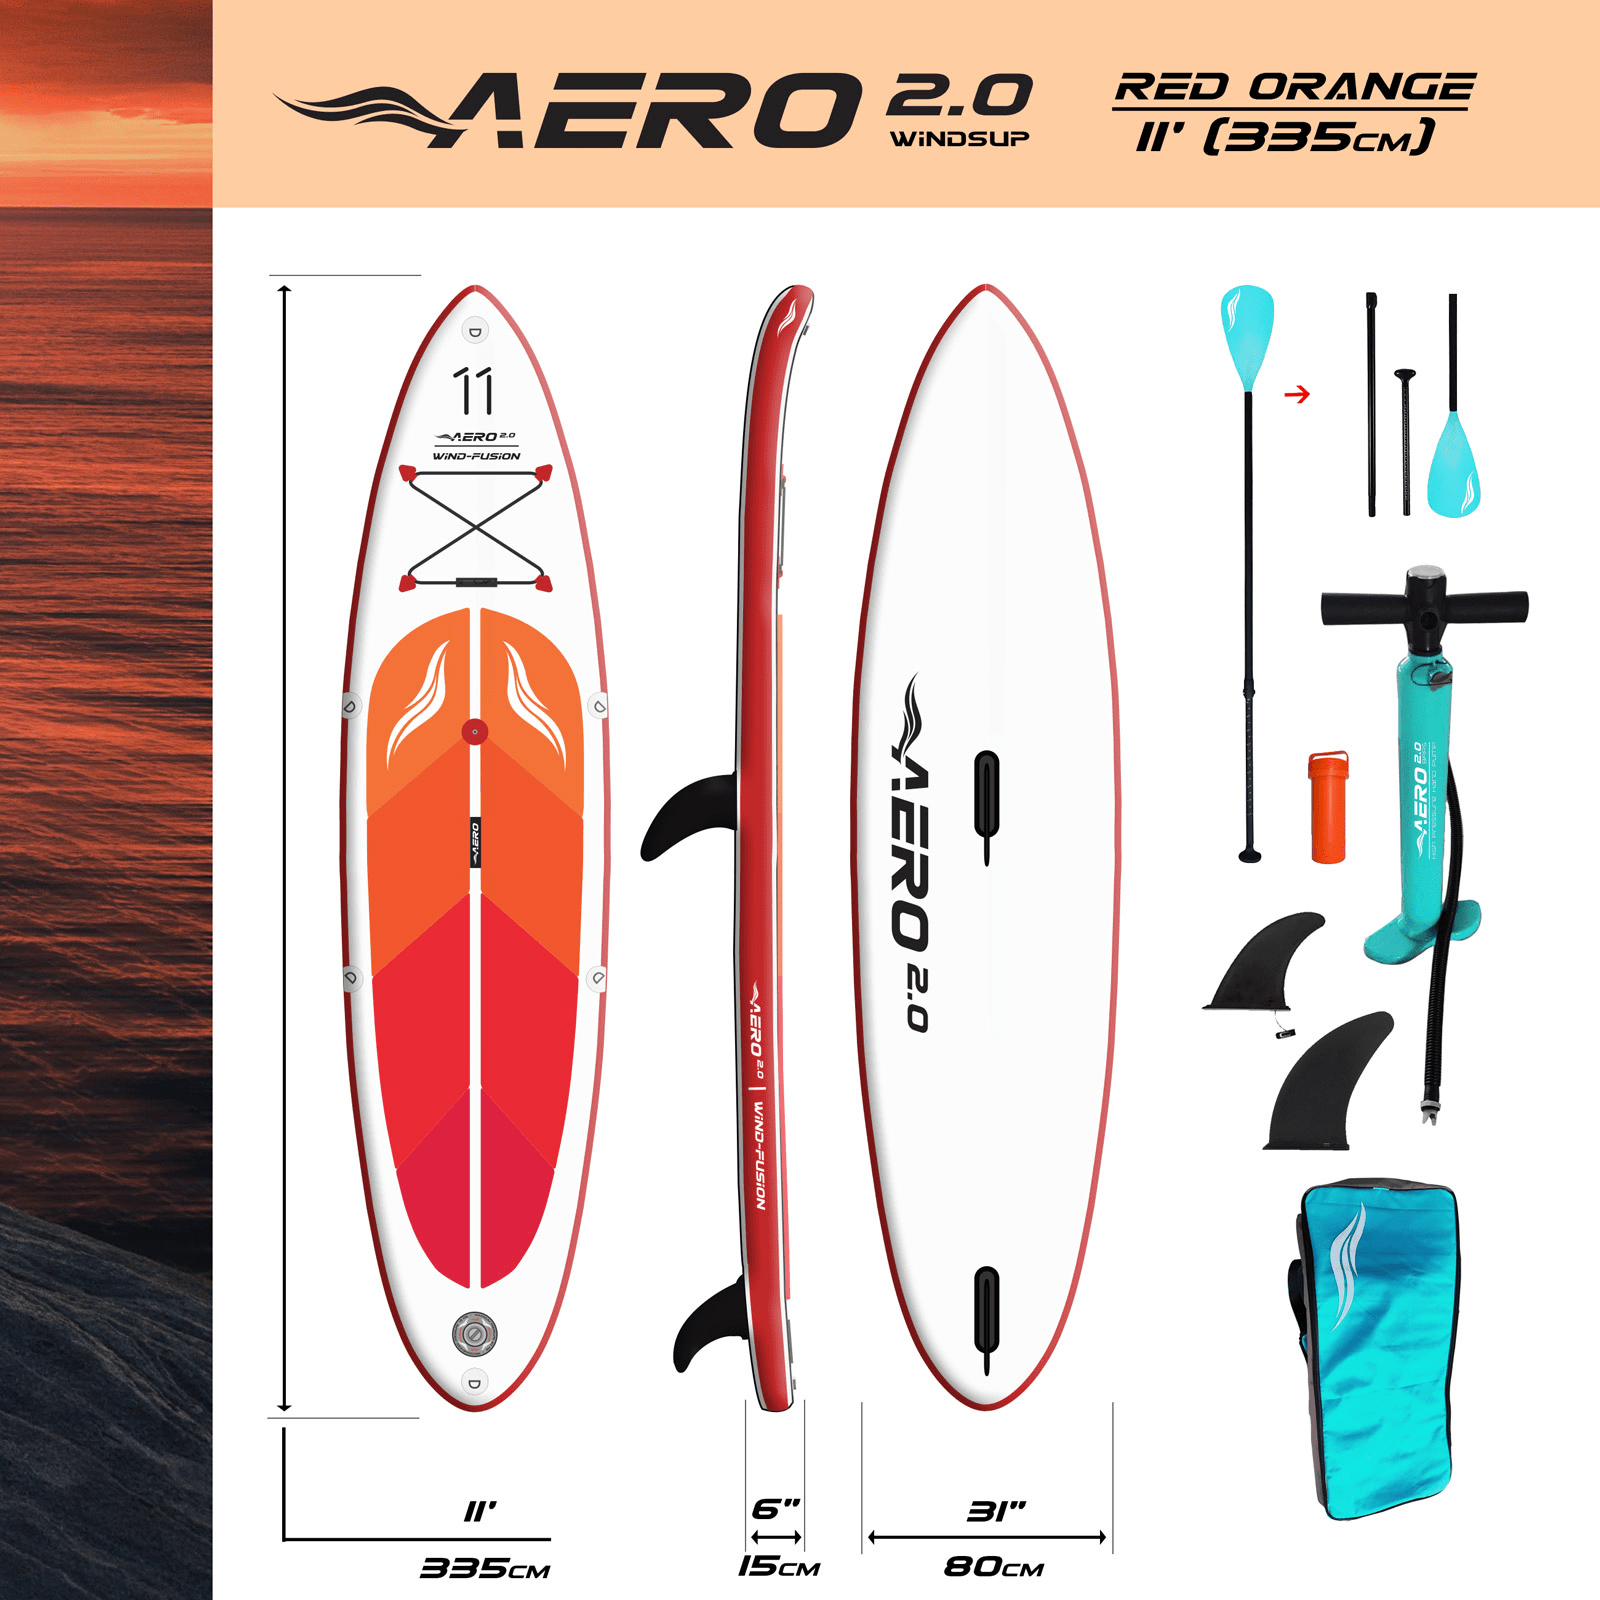 aero-20-red-orange-wind-fusion-11-sup-board-complekt